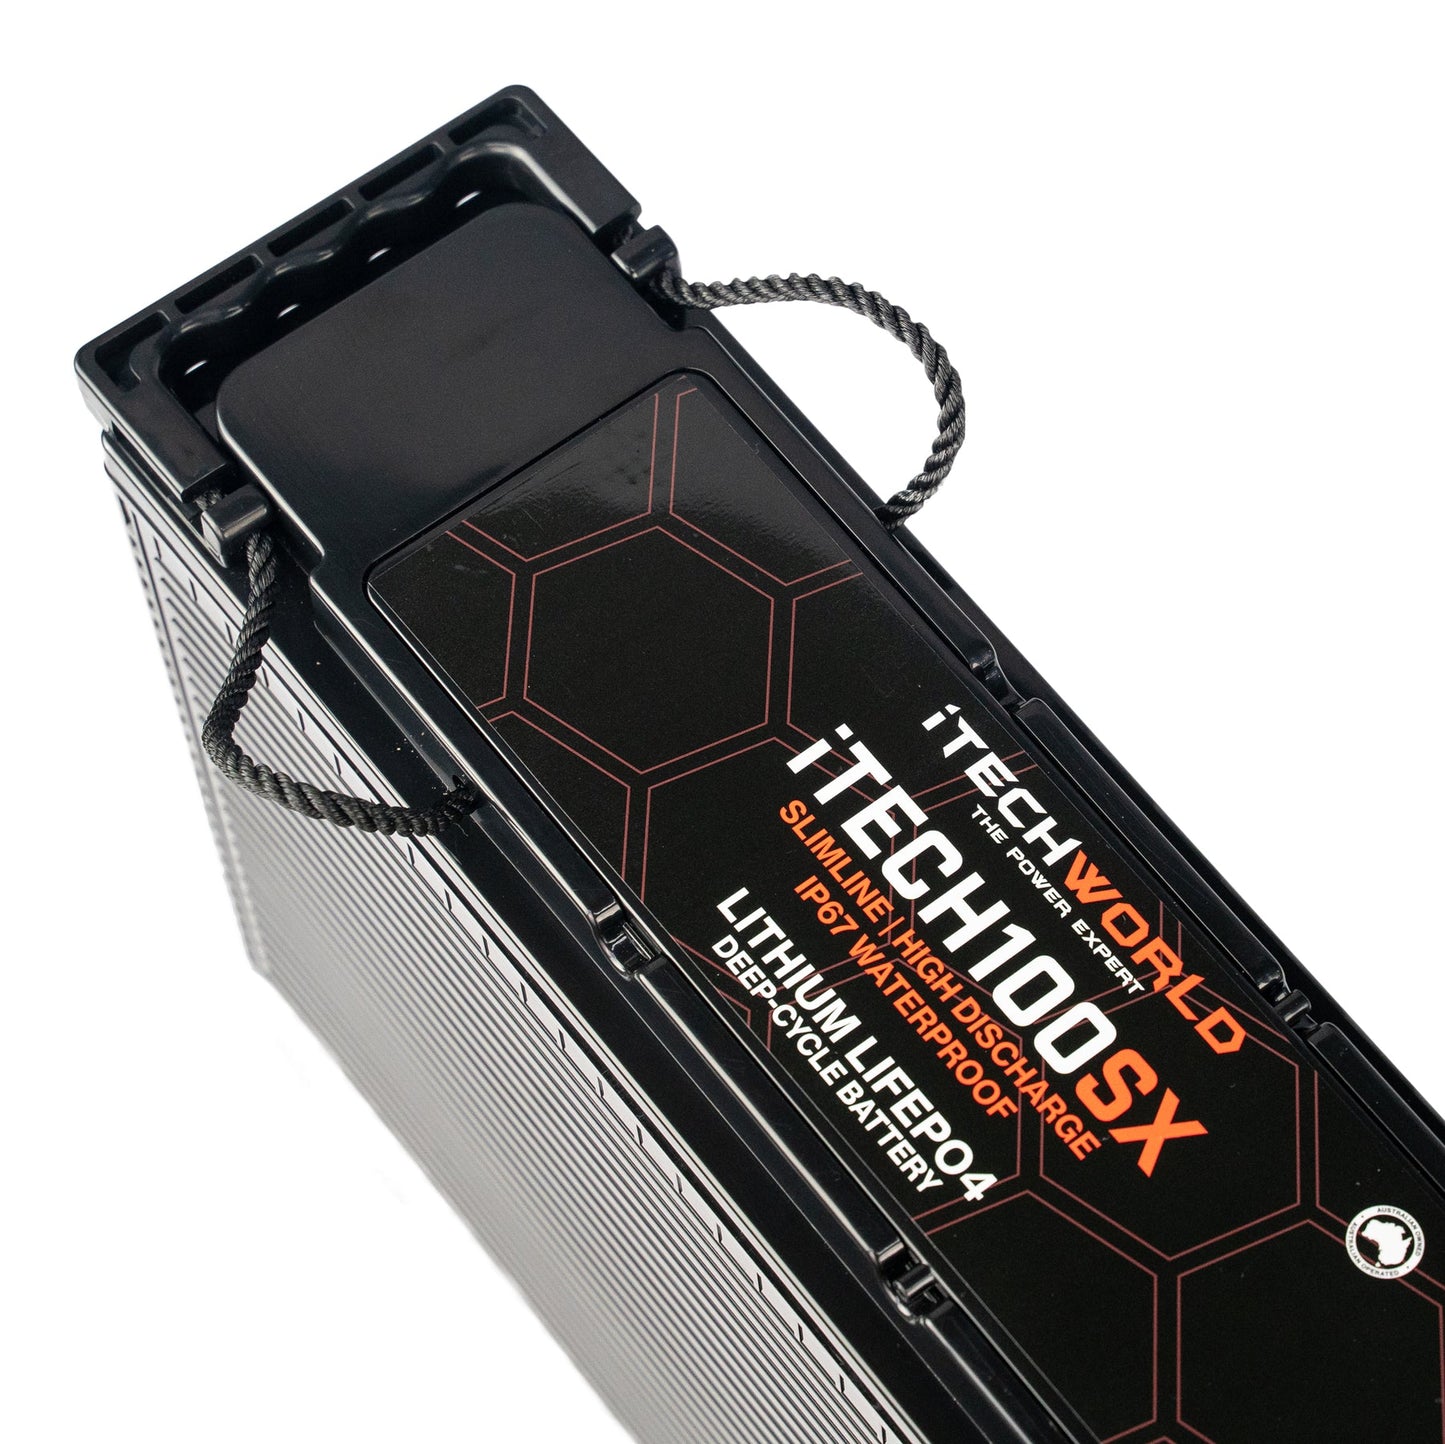 Itech100sx Slim 12V 100ah Lithium Lifepo4 Deep Cycle Battery